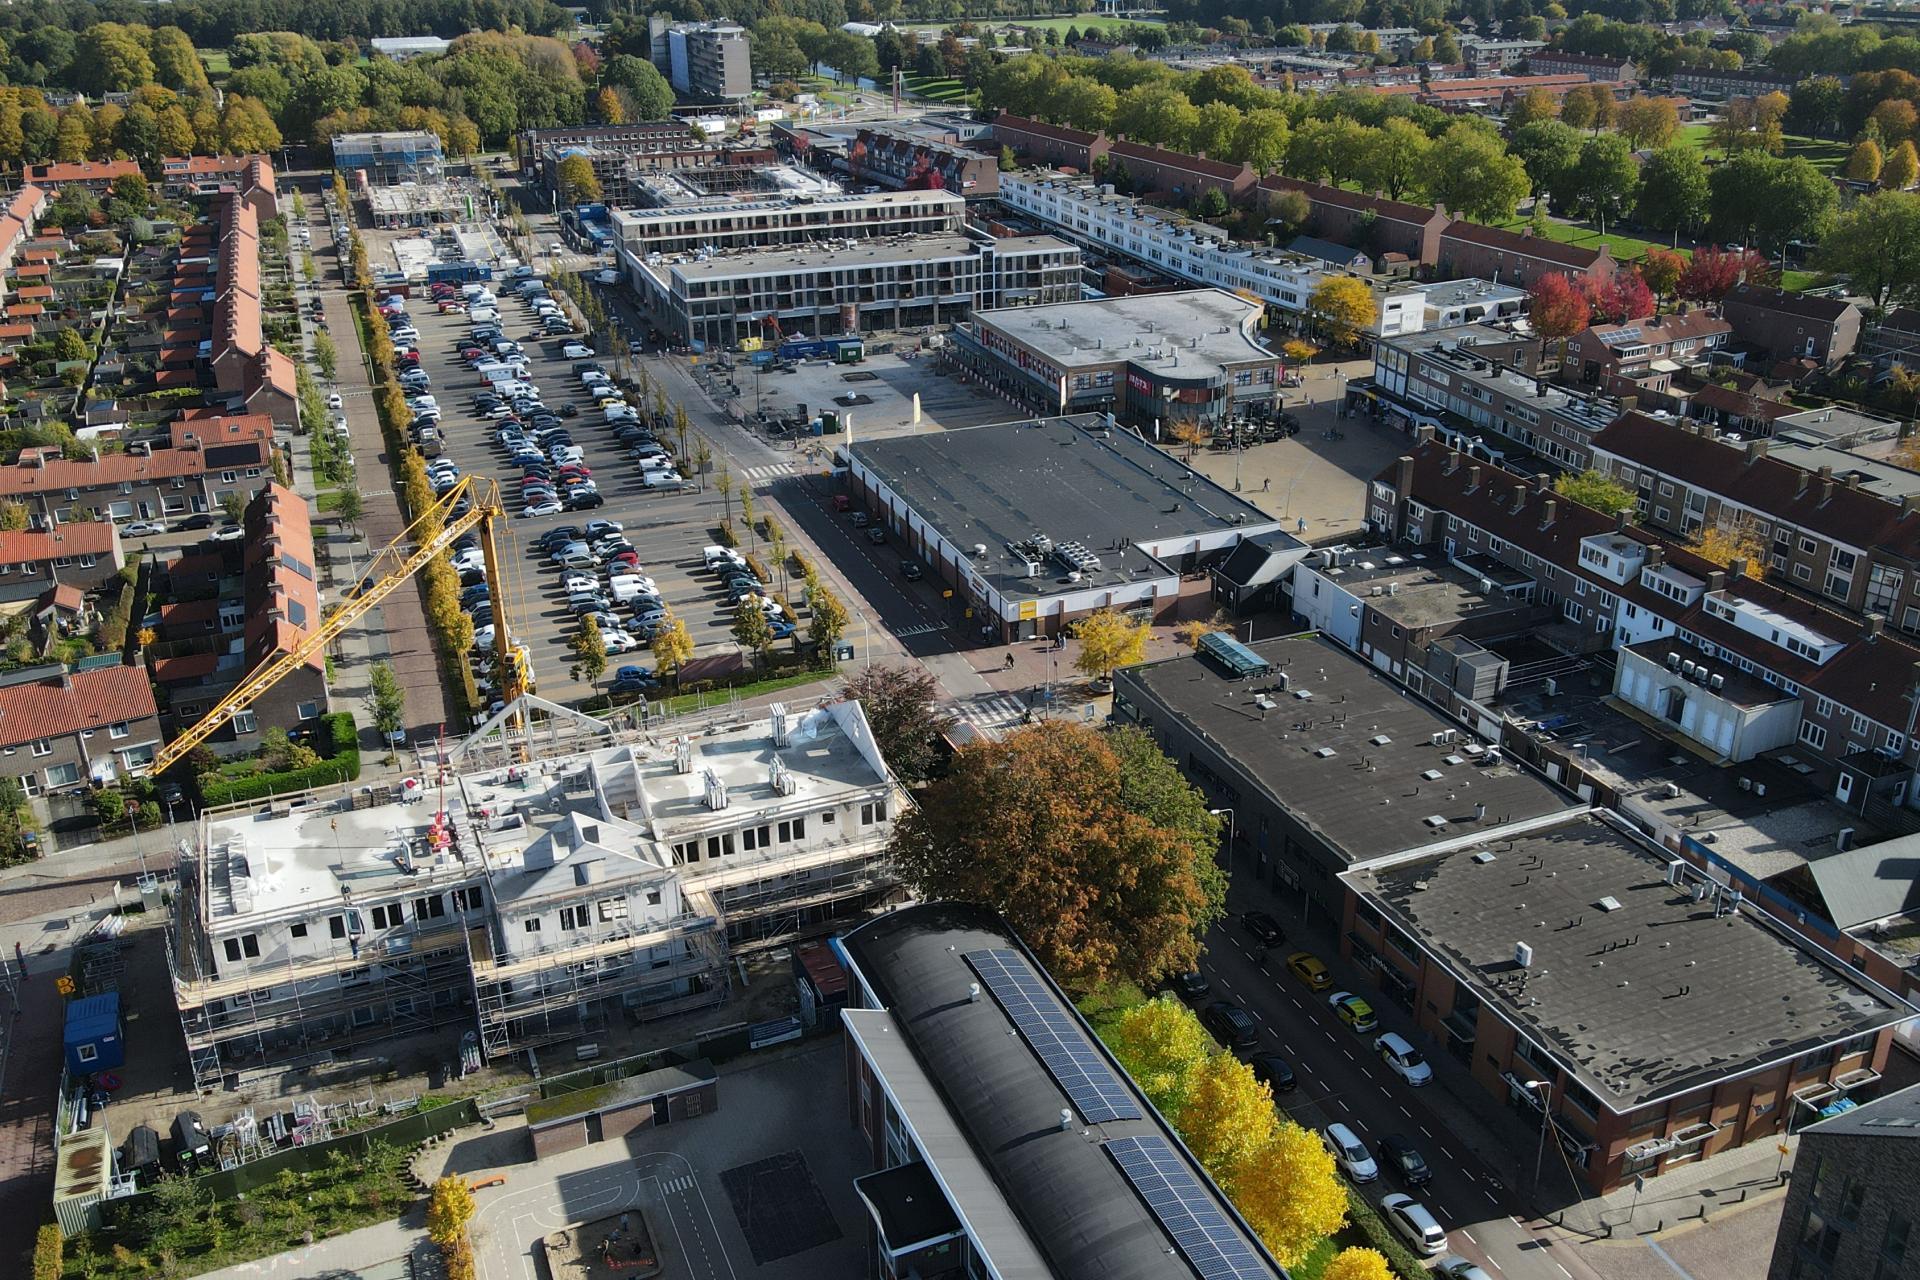 Dronefoto van de werkzaamheden in het centrum van Emmeloord. Vooraan op de foto de St. Josephschool en nieuwbouw van Triade . Links de huizen van oud-Emmeloord, in het midden de Paardenmarkt, Kettingplein en de gebouwen die daar gebouwd worden. Rechts de Lange Nering.